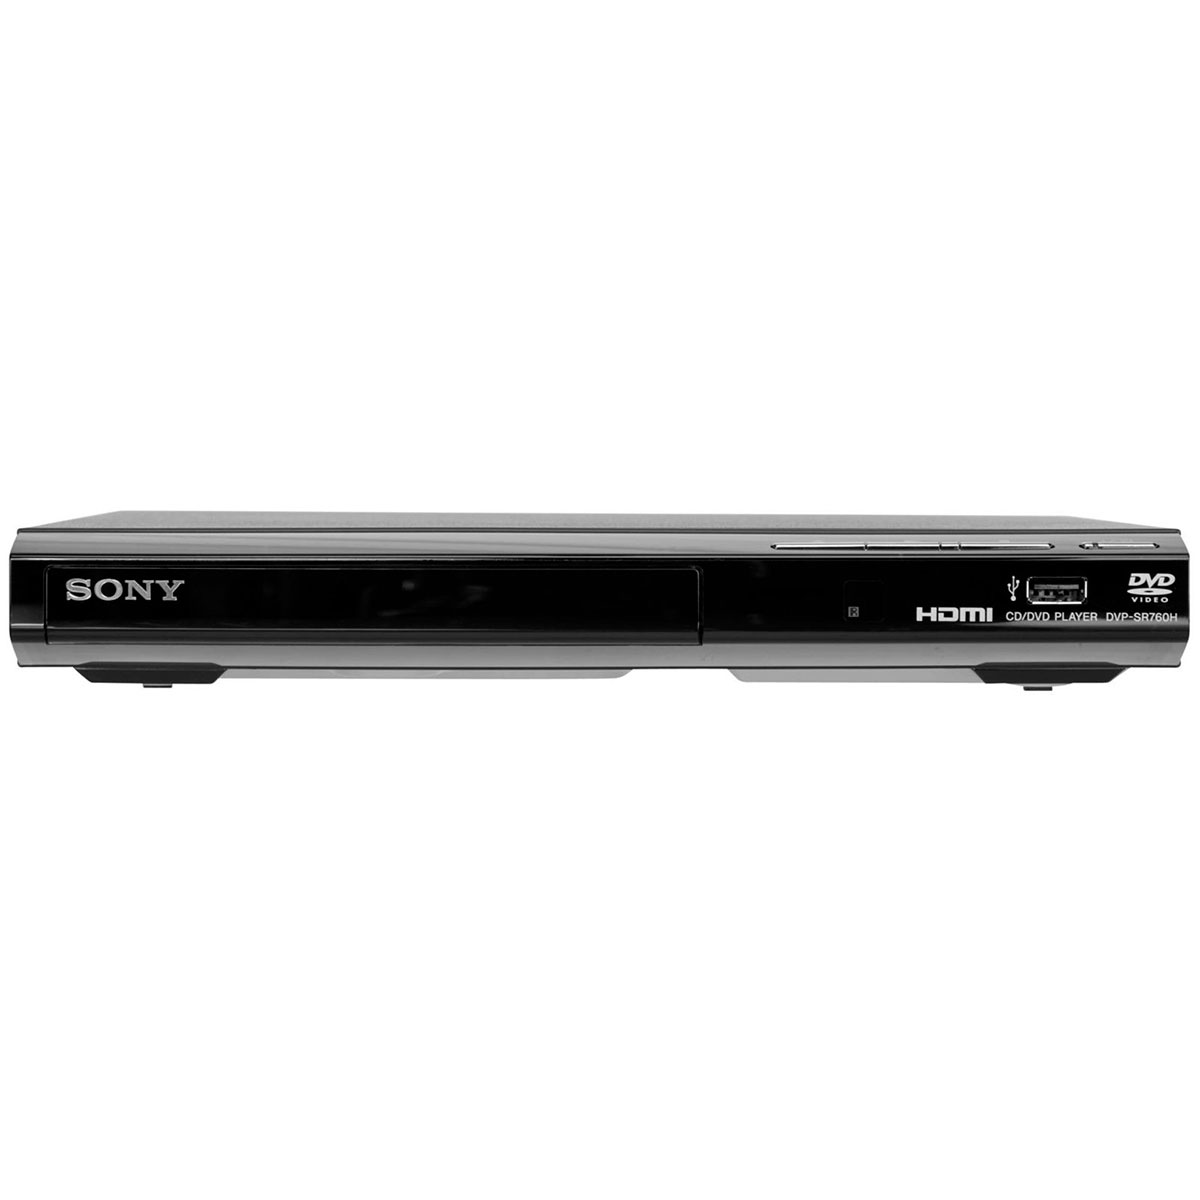 Sony DVP-SR760H DVD m/HDMI (1080P) - avXperten.dk